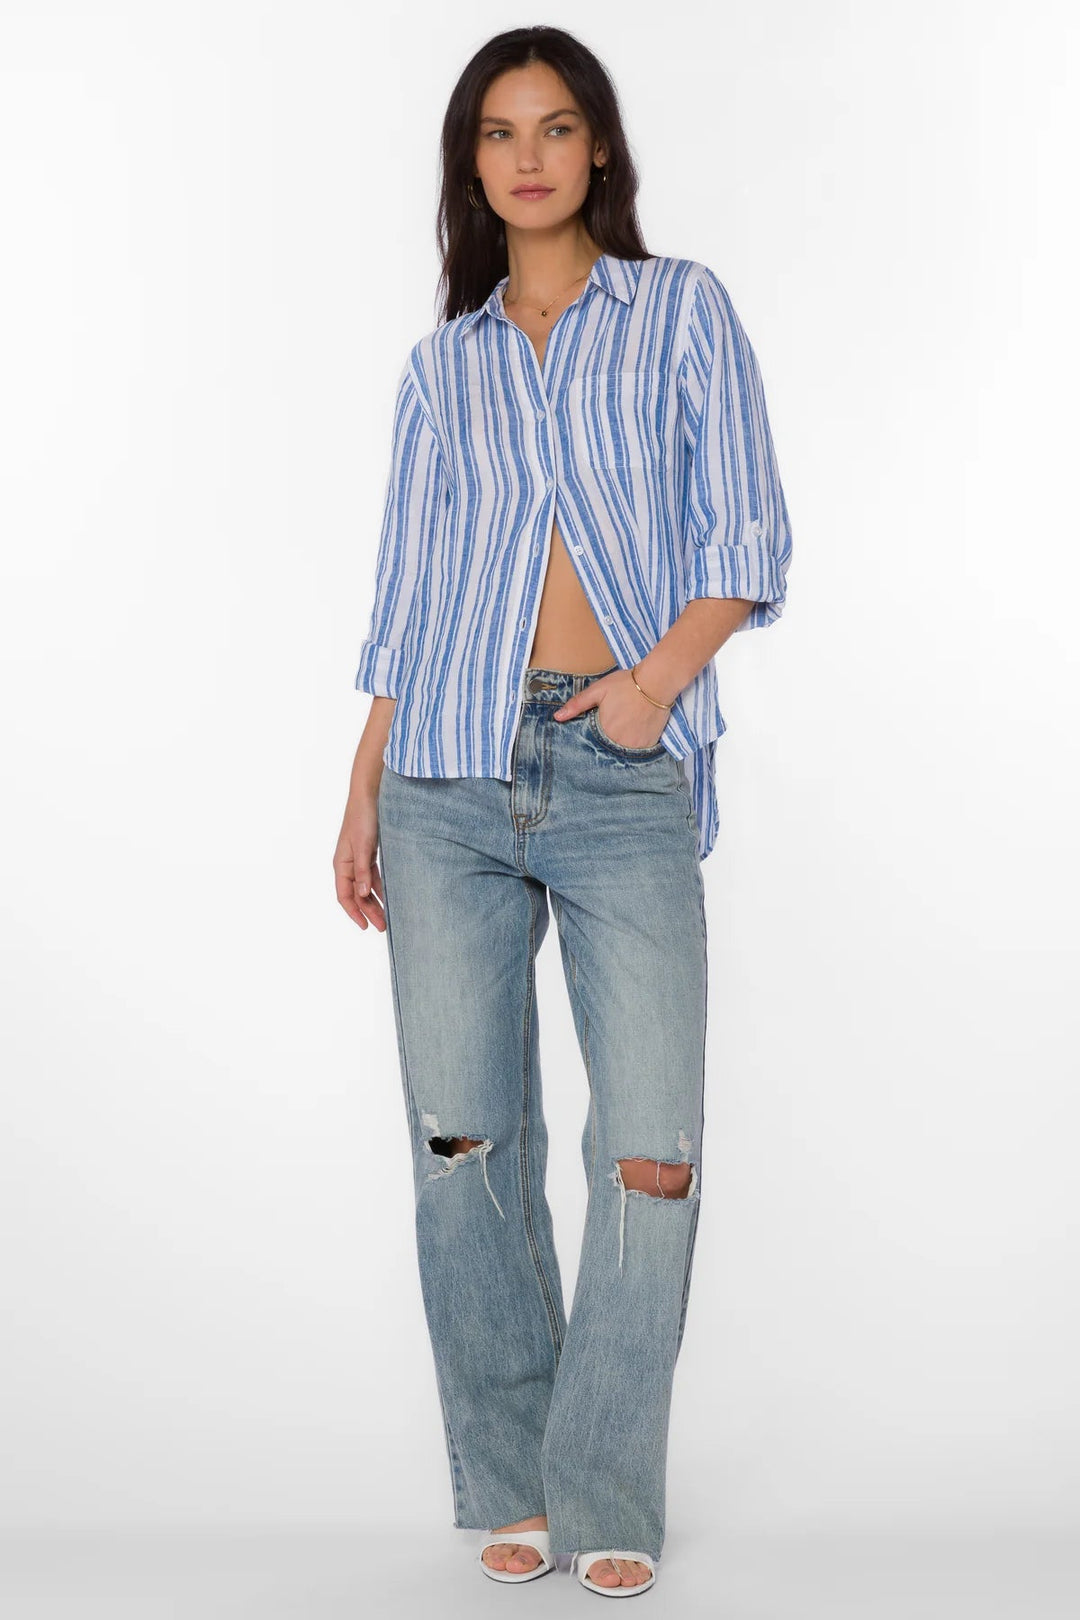 Elisa Blue Stripe Shirt - Lush Lemon - Women's Clothing - Velvet Hearts - 20619206191